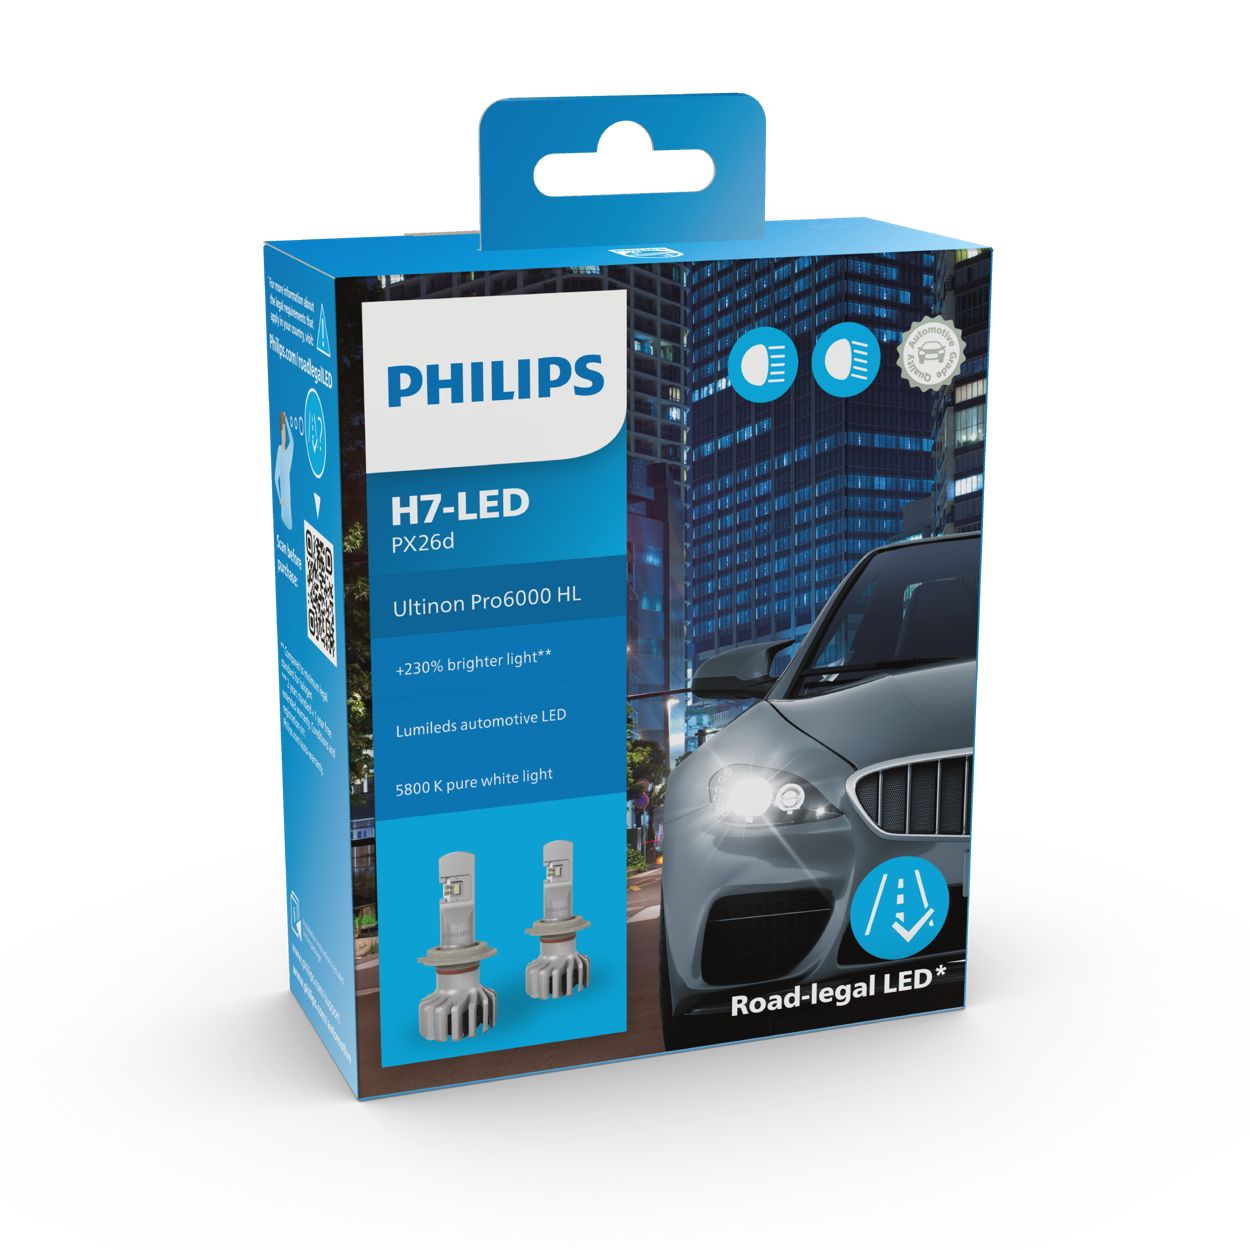 Philips Ultinon Pro6000 H7-LED Scheinwerferlampe mit Straßenzulassung, 230%  helleres Licht & Typ D, Lampenhalterung : : Auto & Motorrad